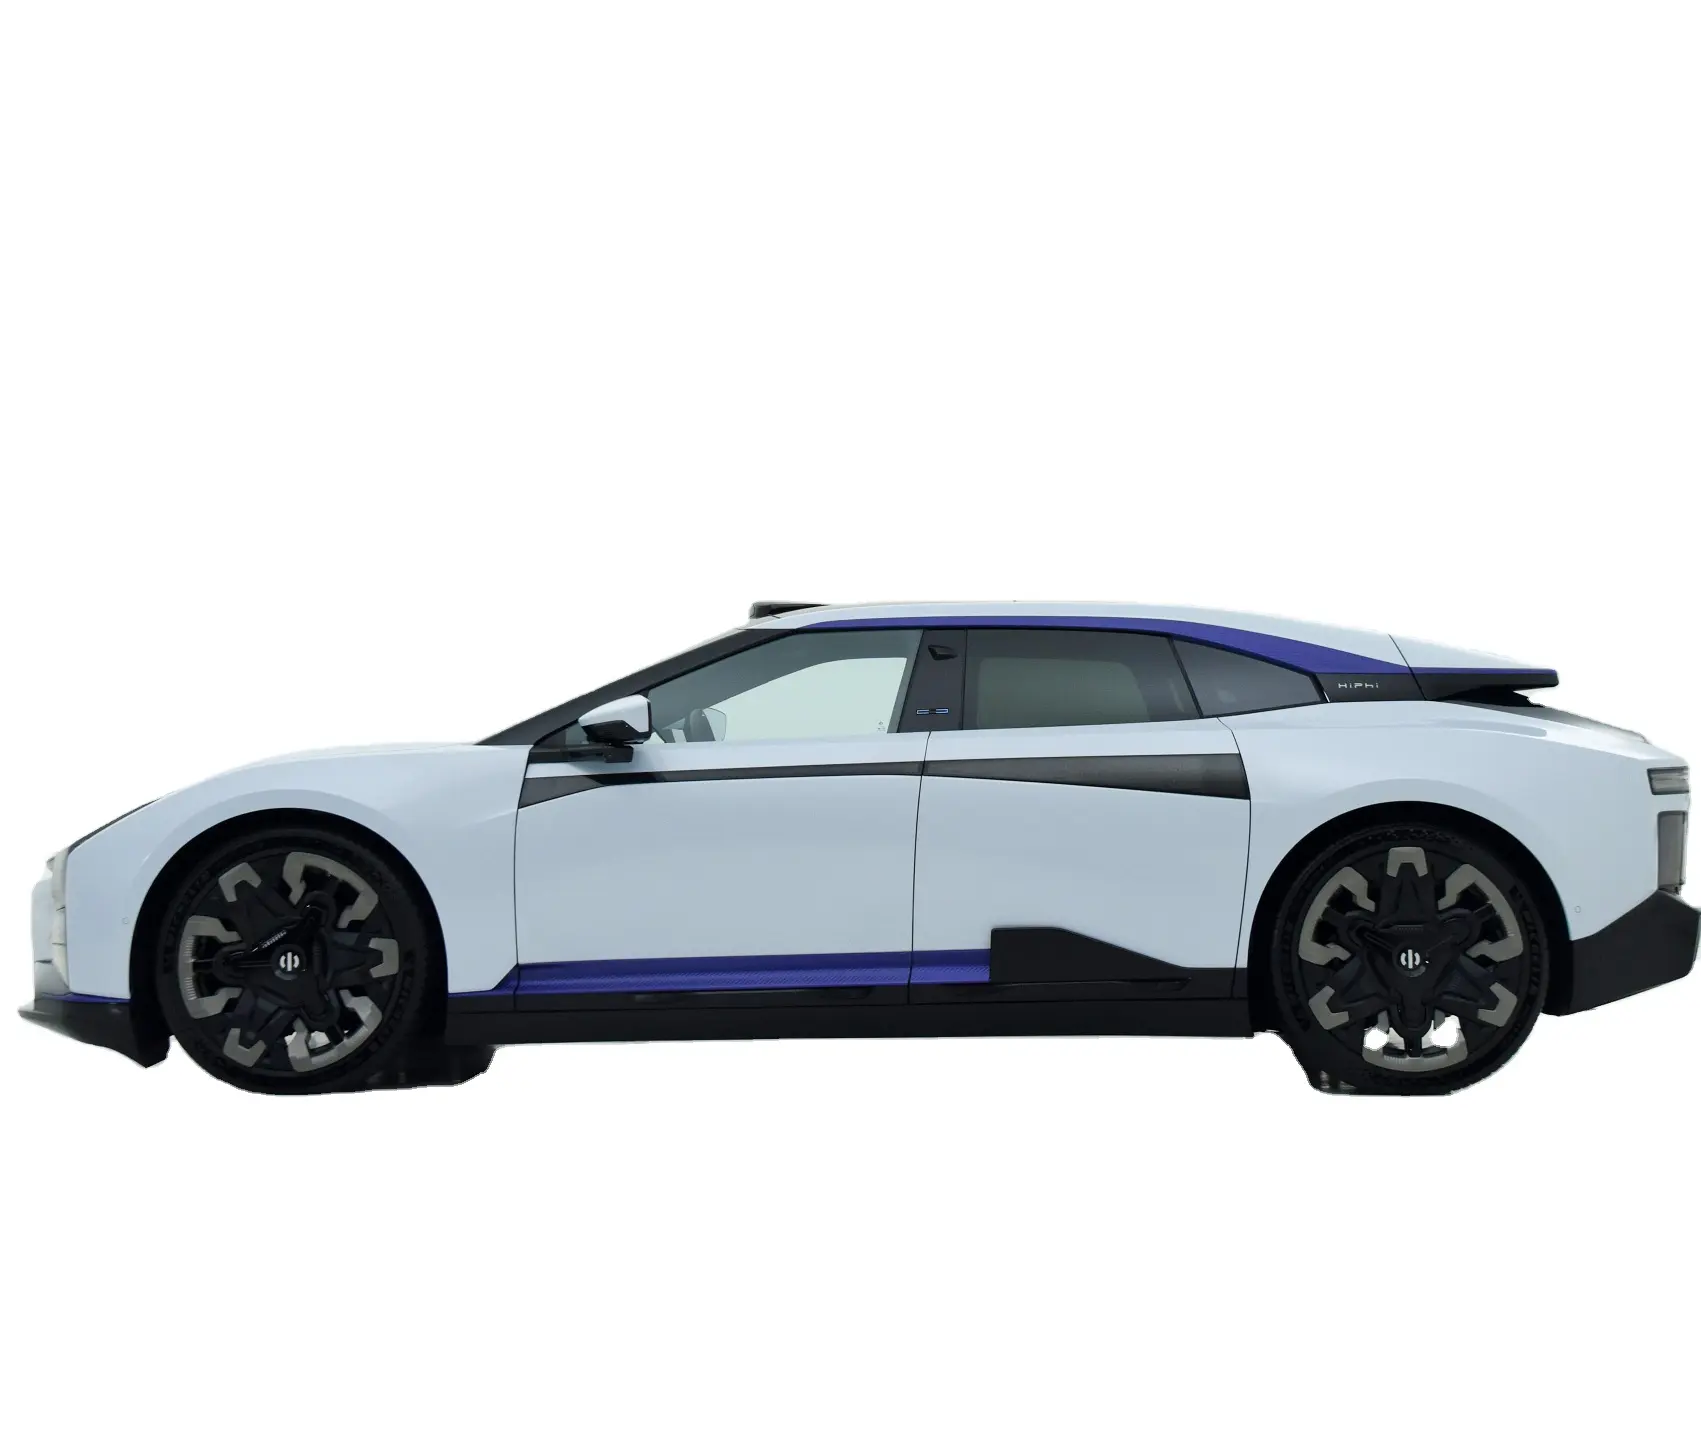 2023 Ev Car 705km Endurance Hiphi Z 4 places double moteurs vitesse maximale 200 km/h 4wd voiture électrique pure Hiphi X voiture électrique nouvelle berline